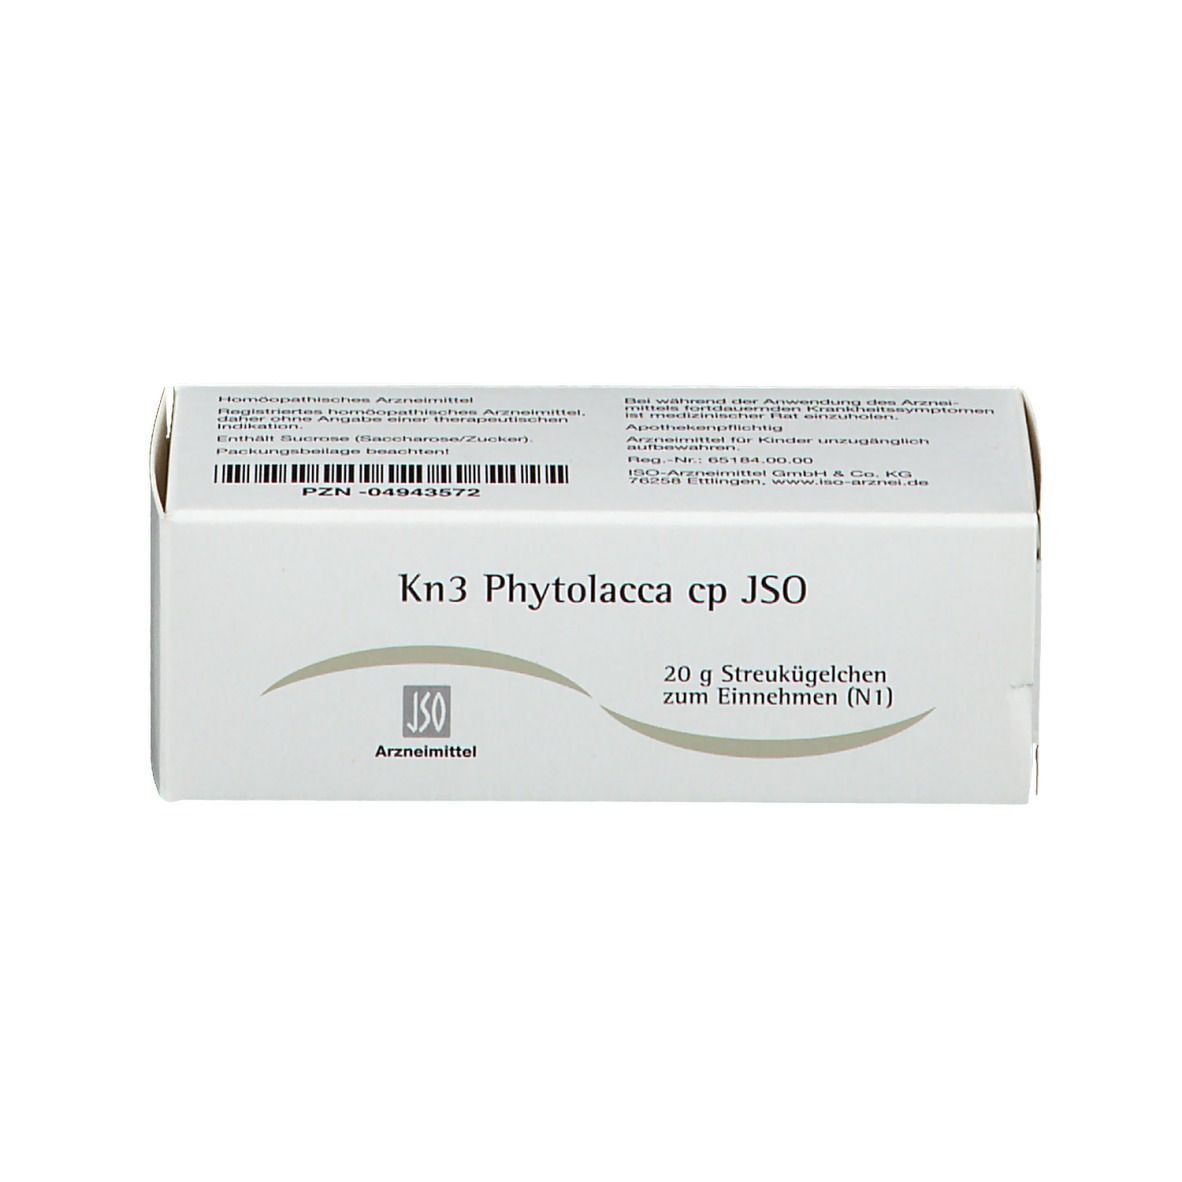 Kn3 Phytolacca cp JSO Globuli